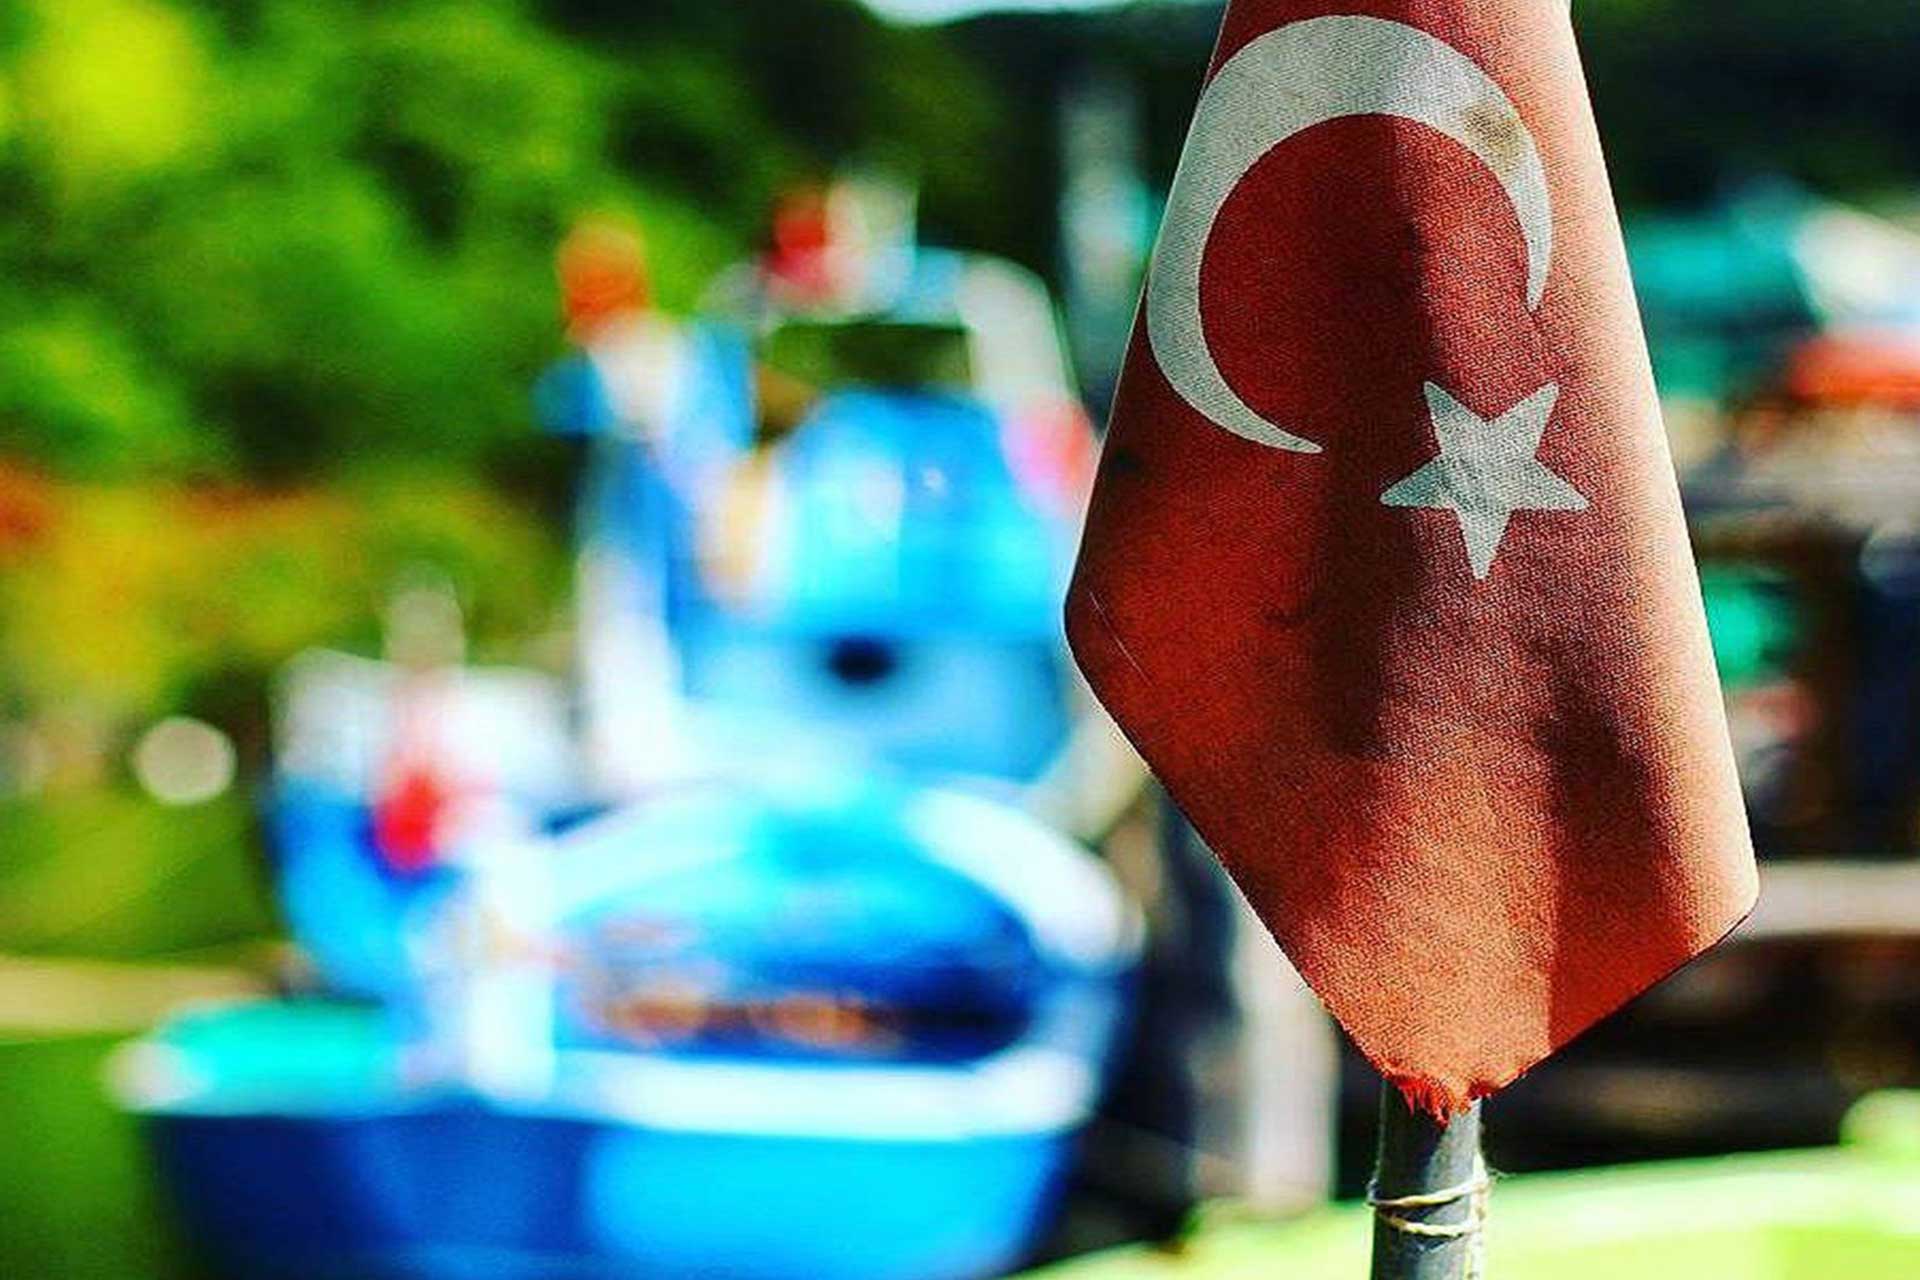 turk bayragi resimleri 2019 16